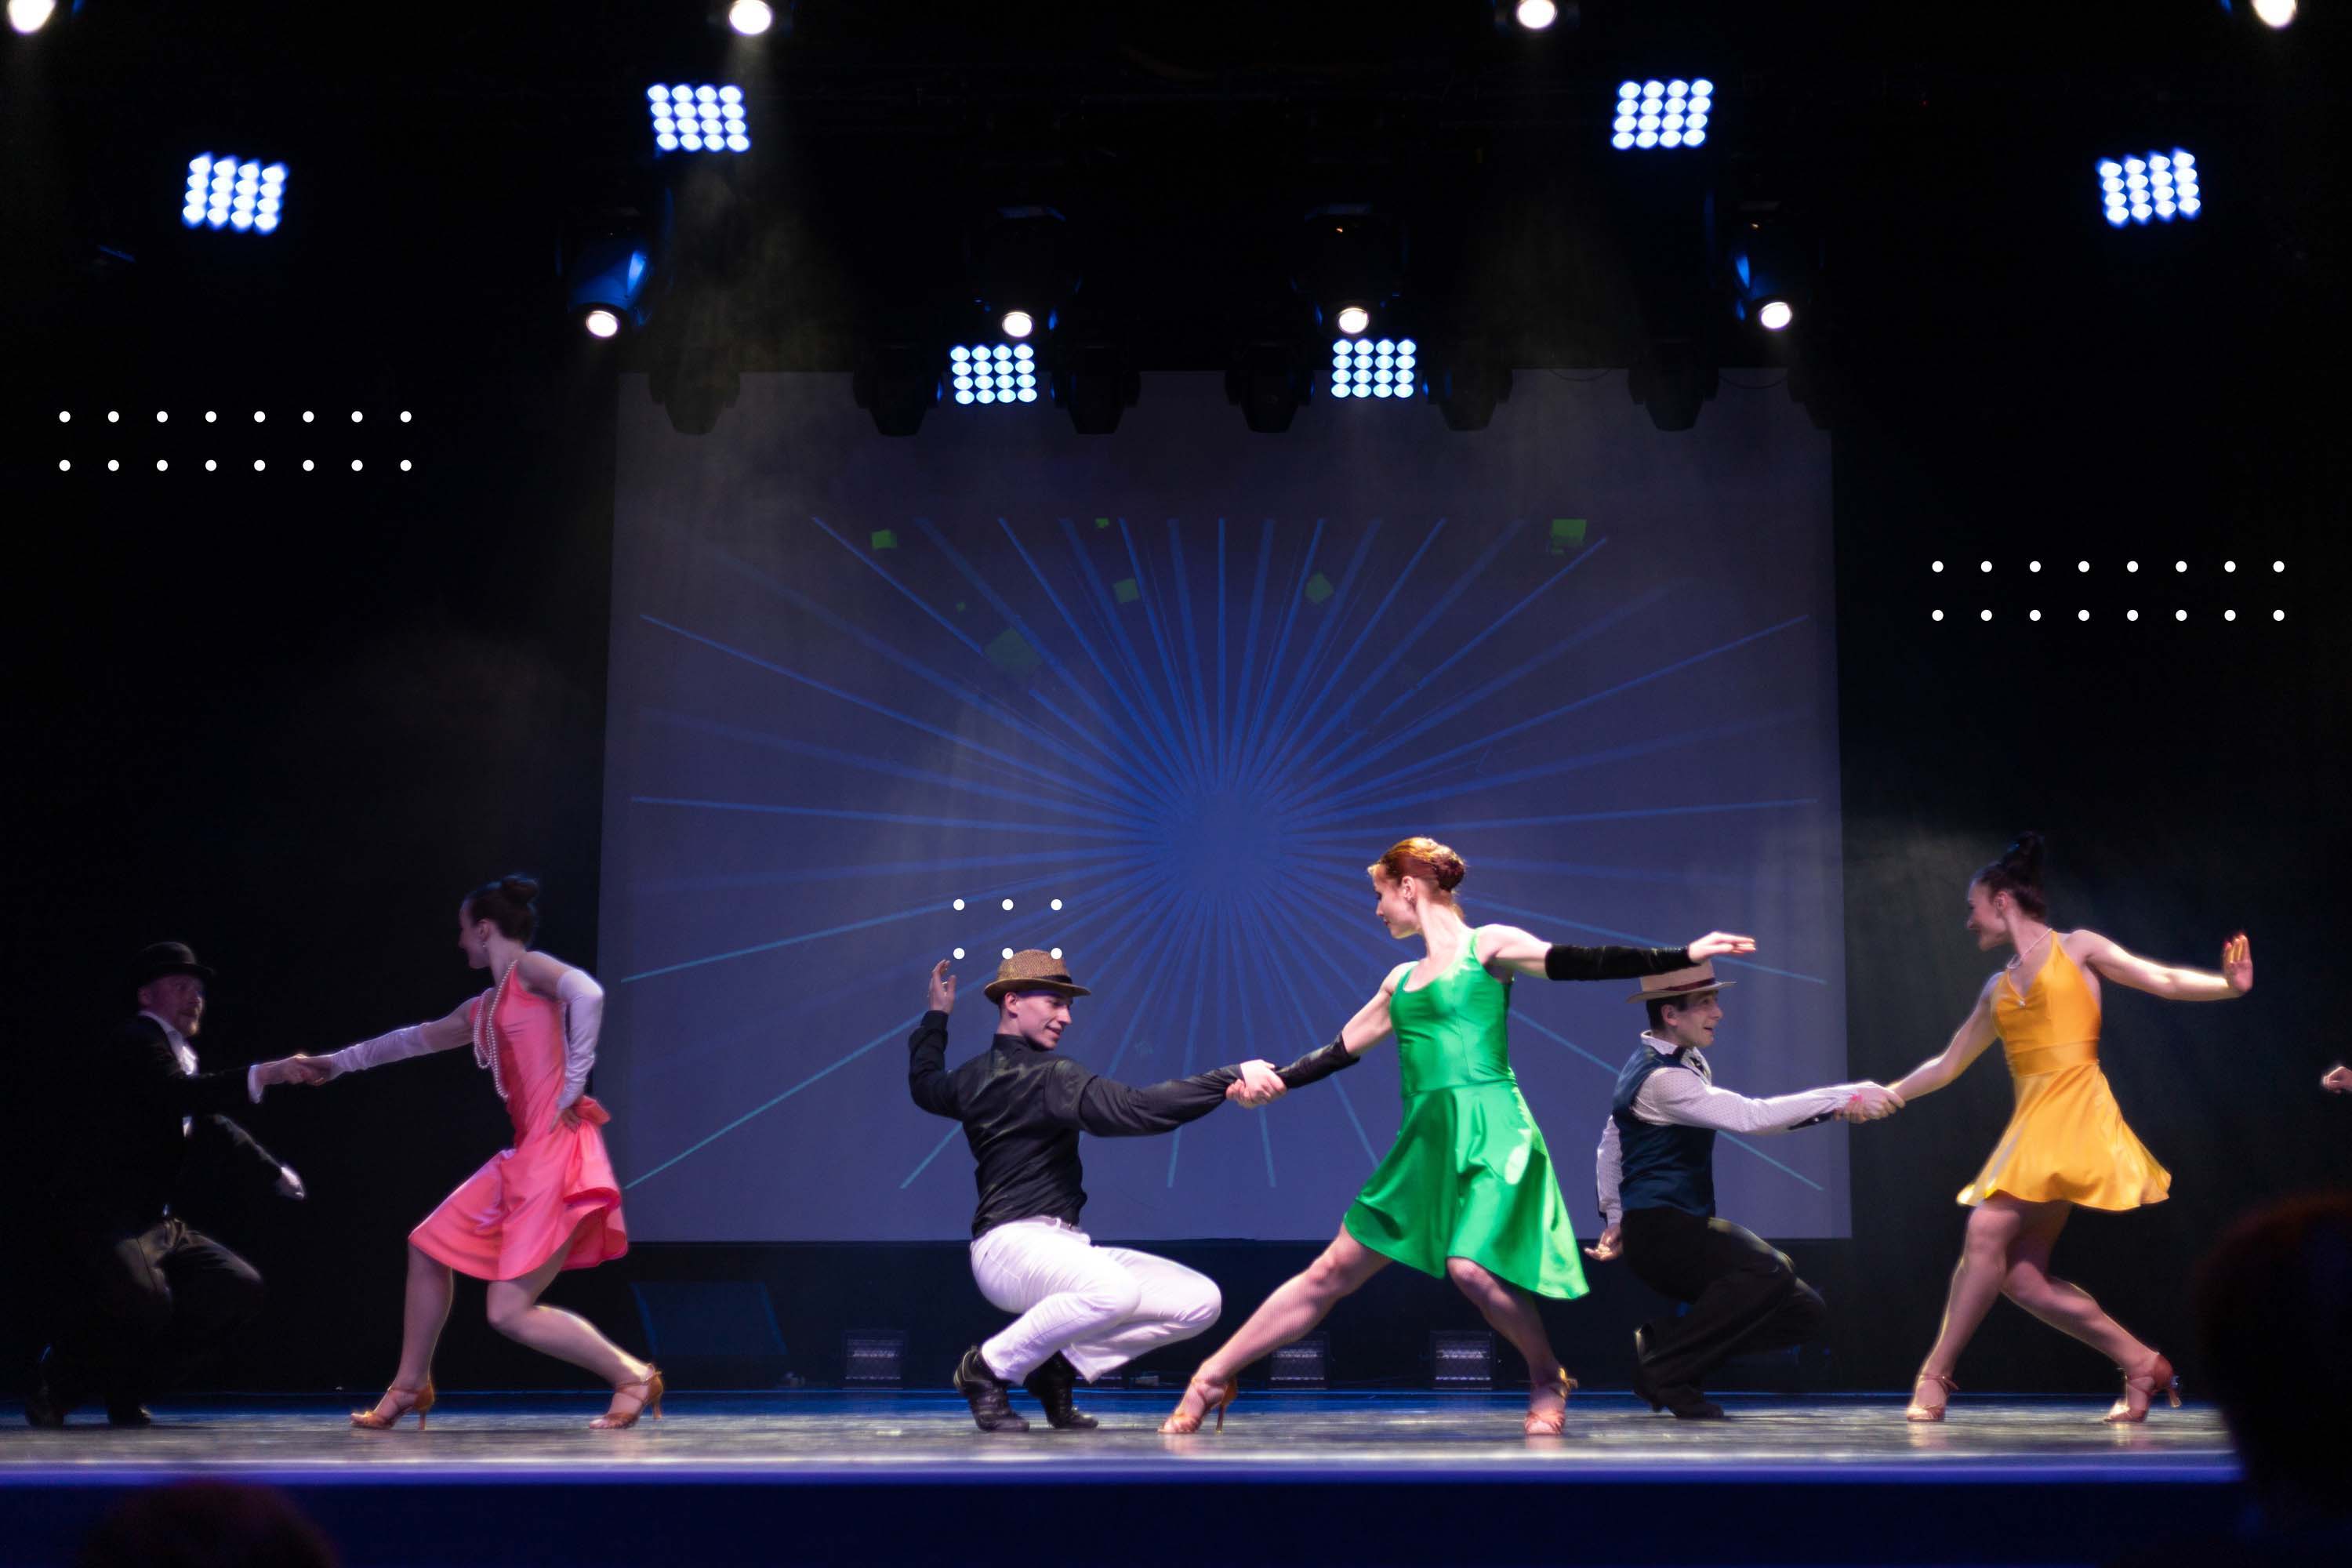 Imagen de la representación de una obra de teatro musical. Los bailarines principales se mueven con libertad, gracias a la visión que les brindan sus lentes de contacto.